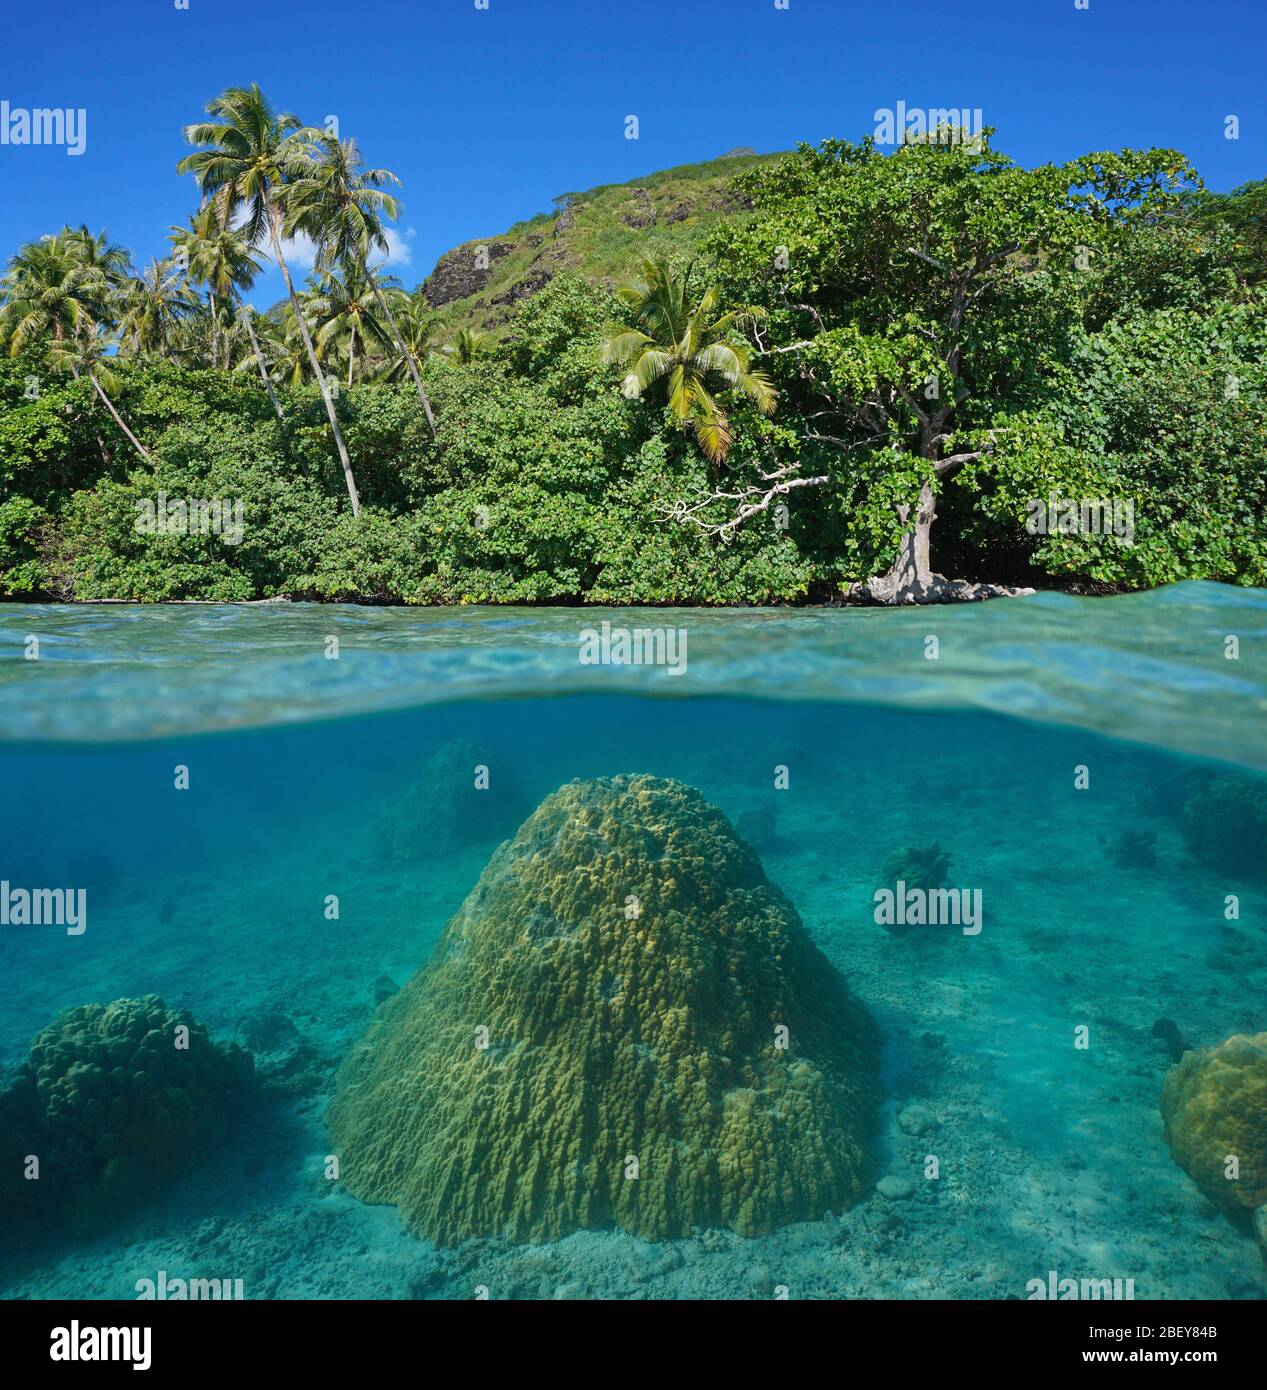 Exuberante follaje en la costa tropical y lóbulos de coral bajo el agua, vista dividida sobre y bajo la superficie del agua, Polinesia Francesa, isla Huahine, océano Pacífico Foto de stock